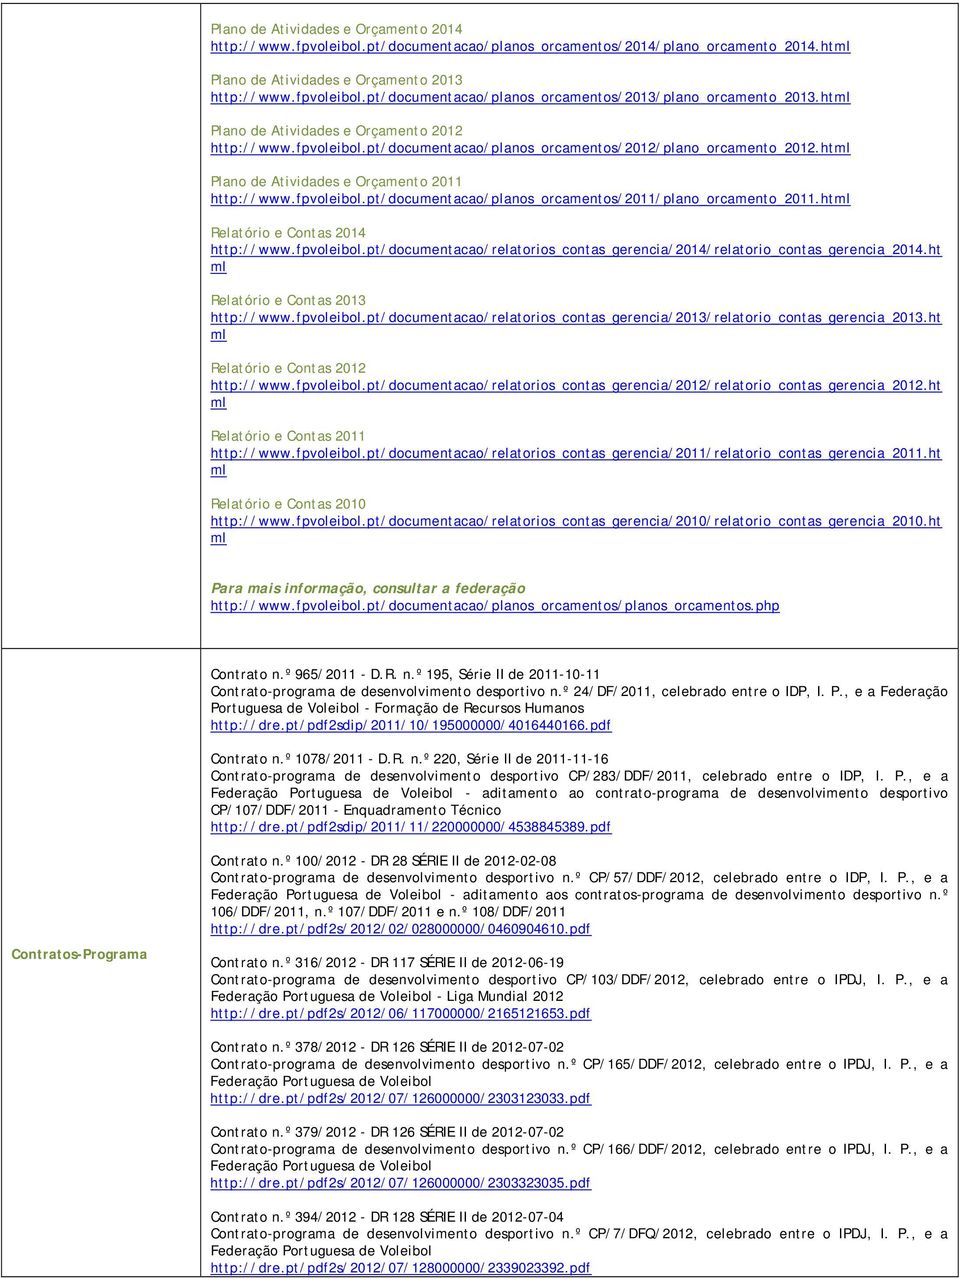 ht Relatório e Contas 2014 http://www.fpvoleibol.pt/documentacao/relatorios_contas_gerencia/2014/relatorio_contas_gerencia_2014.ht Relatório e Contas 2013 http://www.fpvoleibol.pt/documentacao/relatorios_contas_gerencia/2013/relatorio_contas_gerencia_2013.